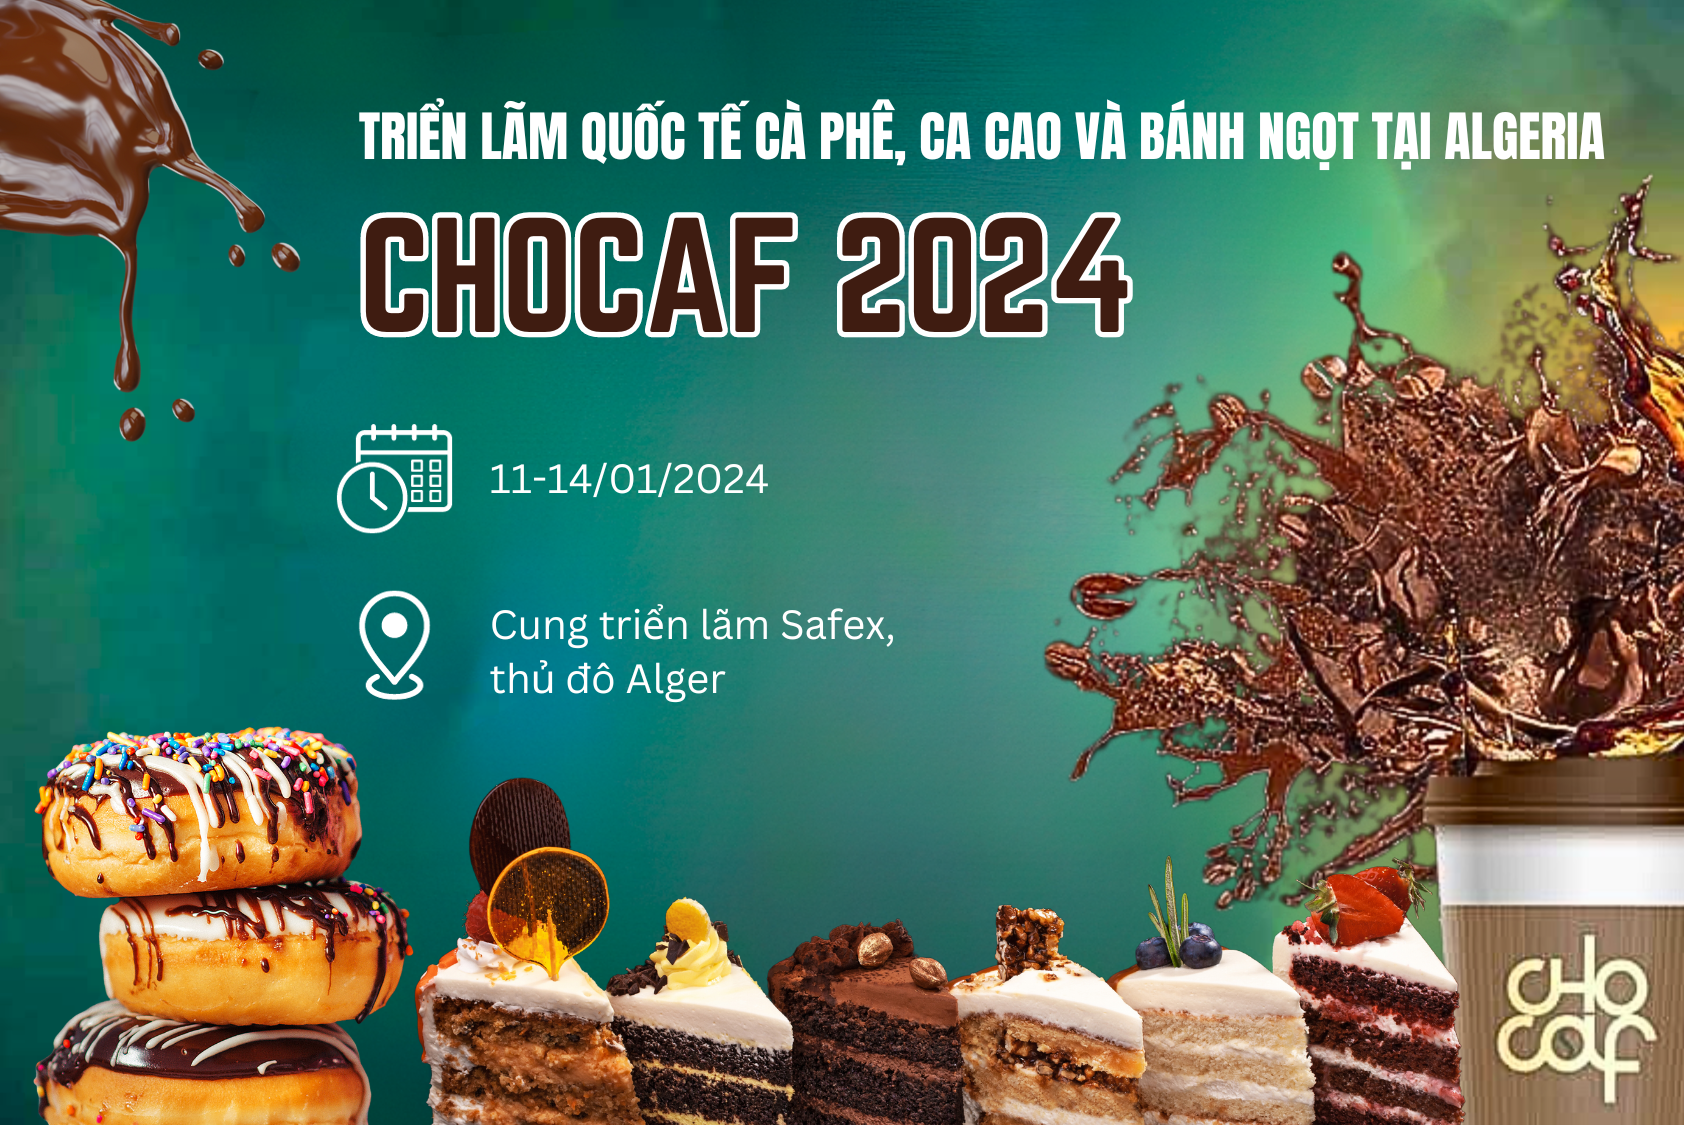 Triển lãm quốc tế cà phê, ca cao và bánh ngọt CHOCAF 2024